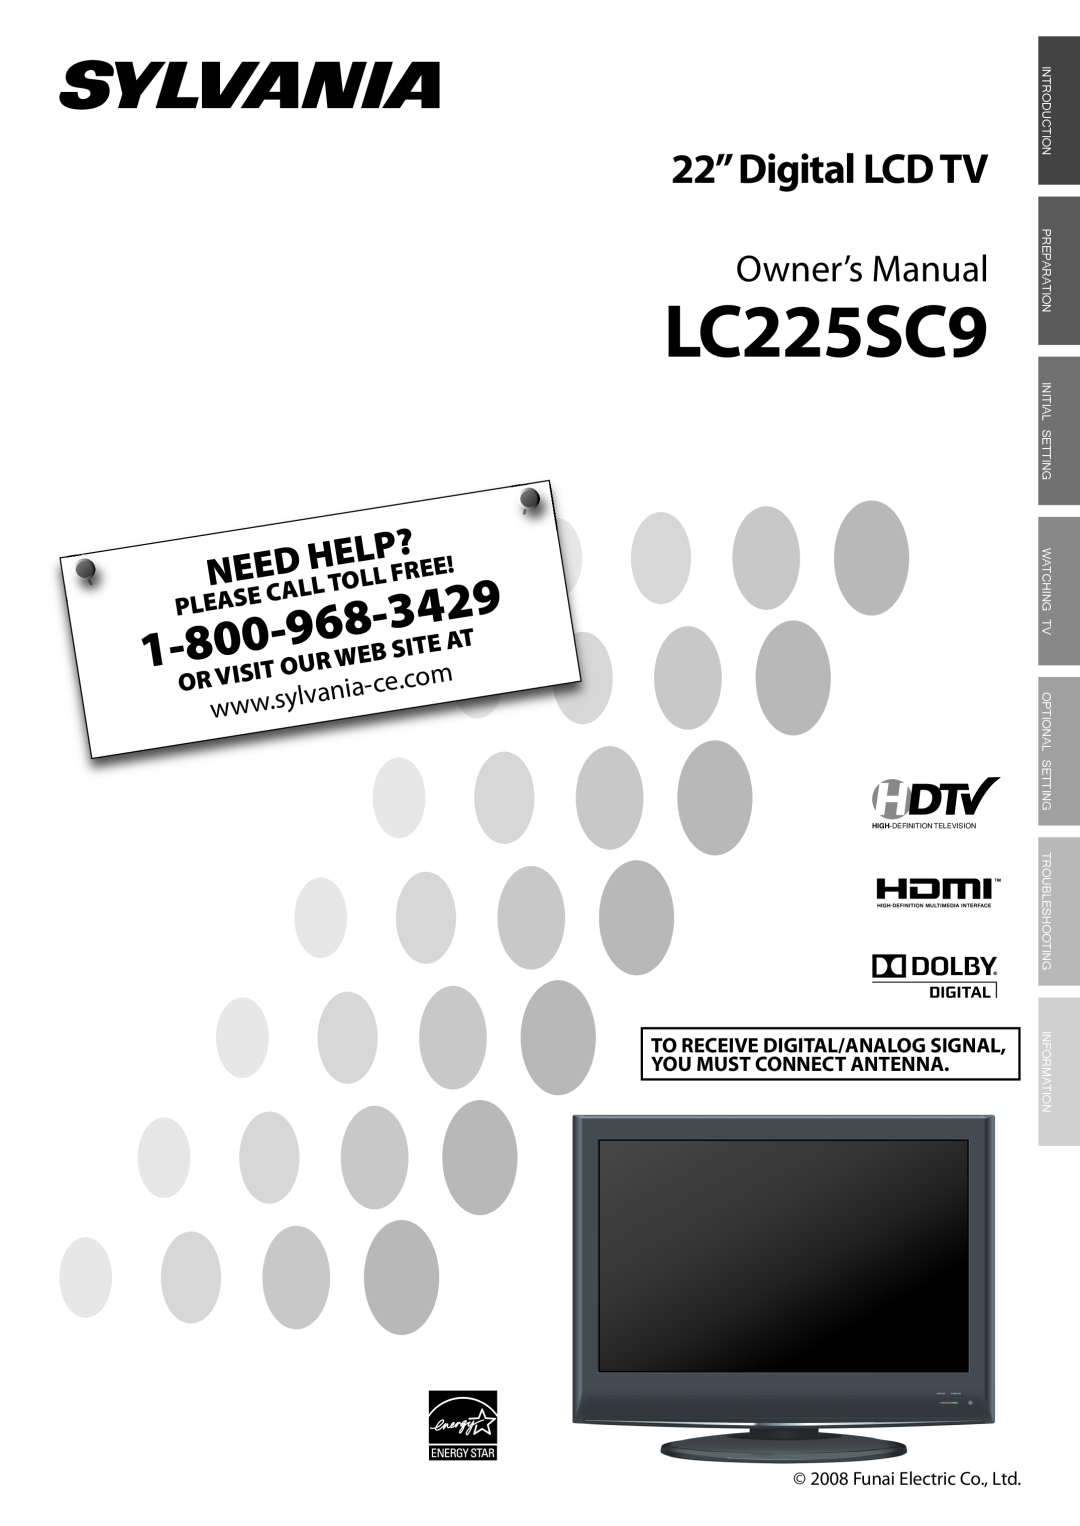 Sylvania LC225SC9 owner manual 3429, sylvania, Free, Visit, 22”Digital LCD TV, Owner’s Manual, Need, Help?, Call, Site 